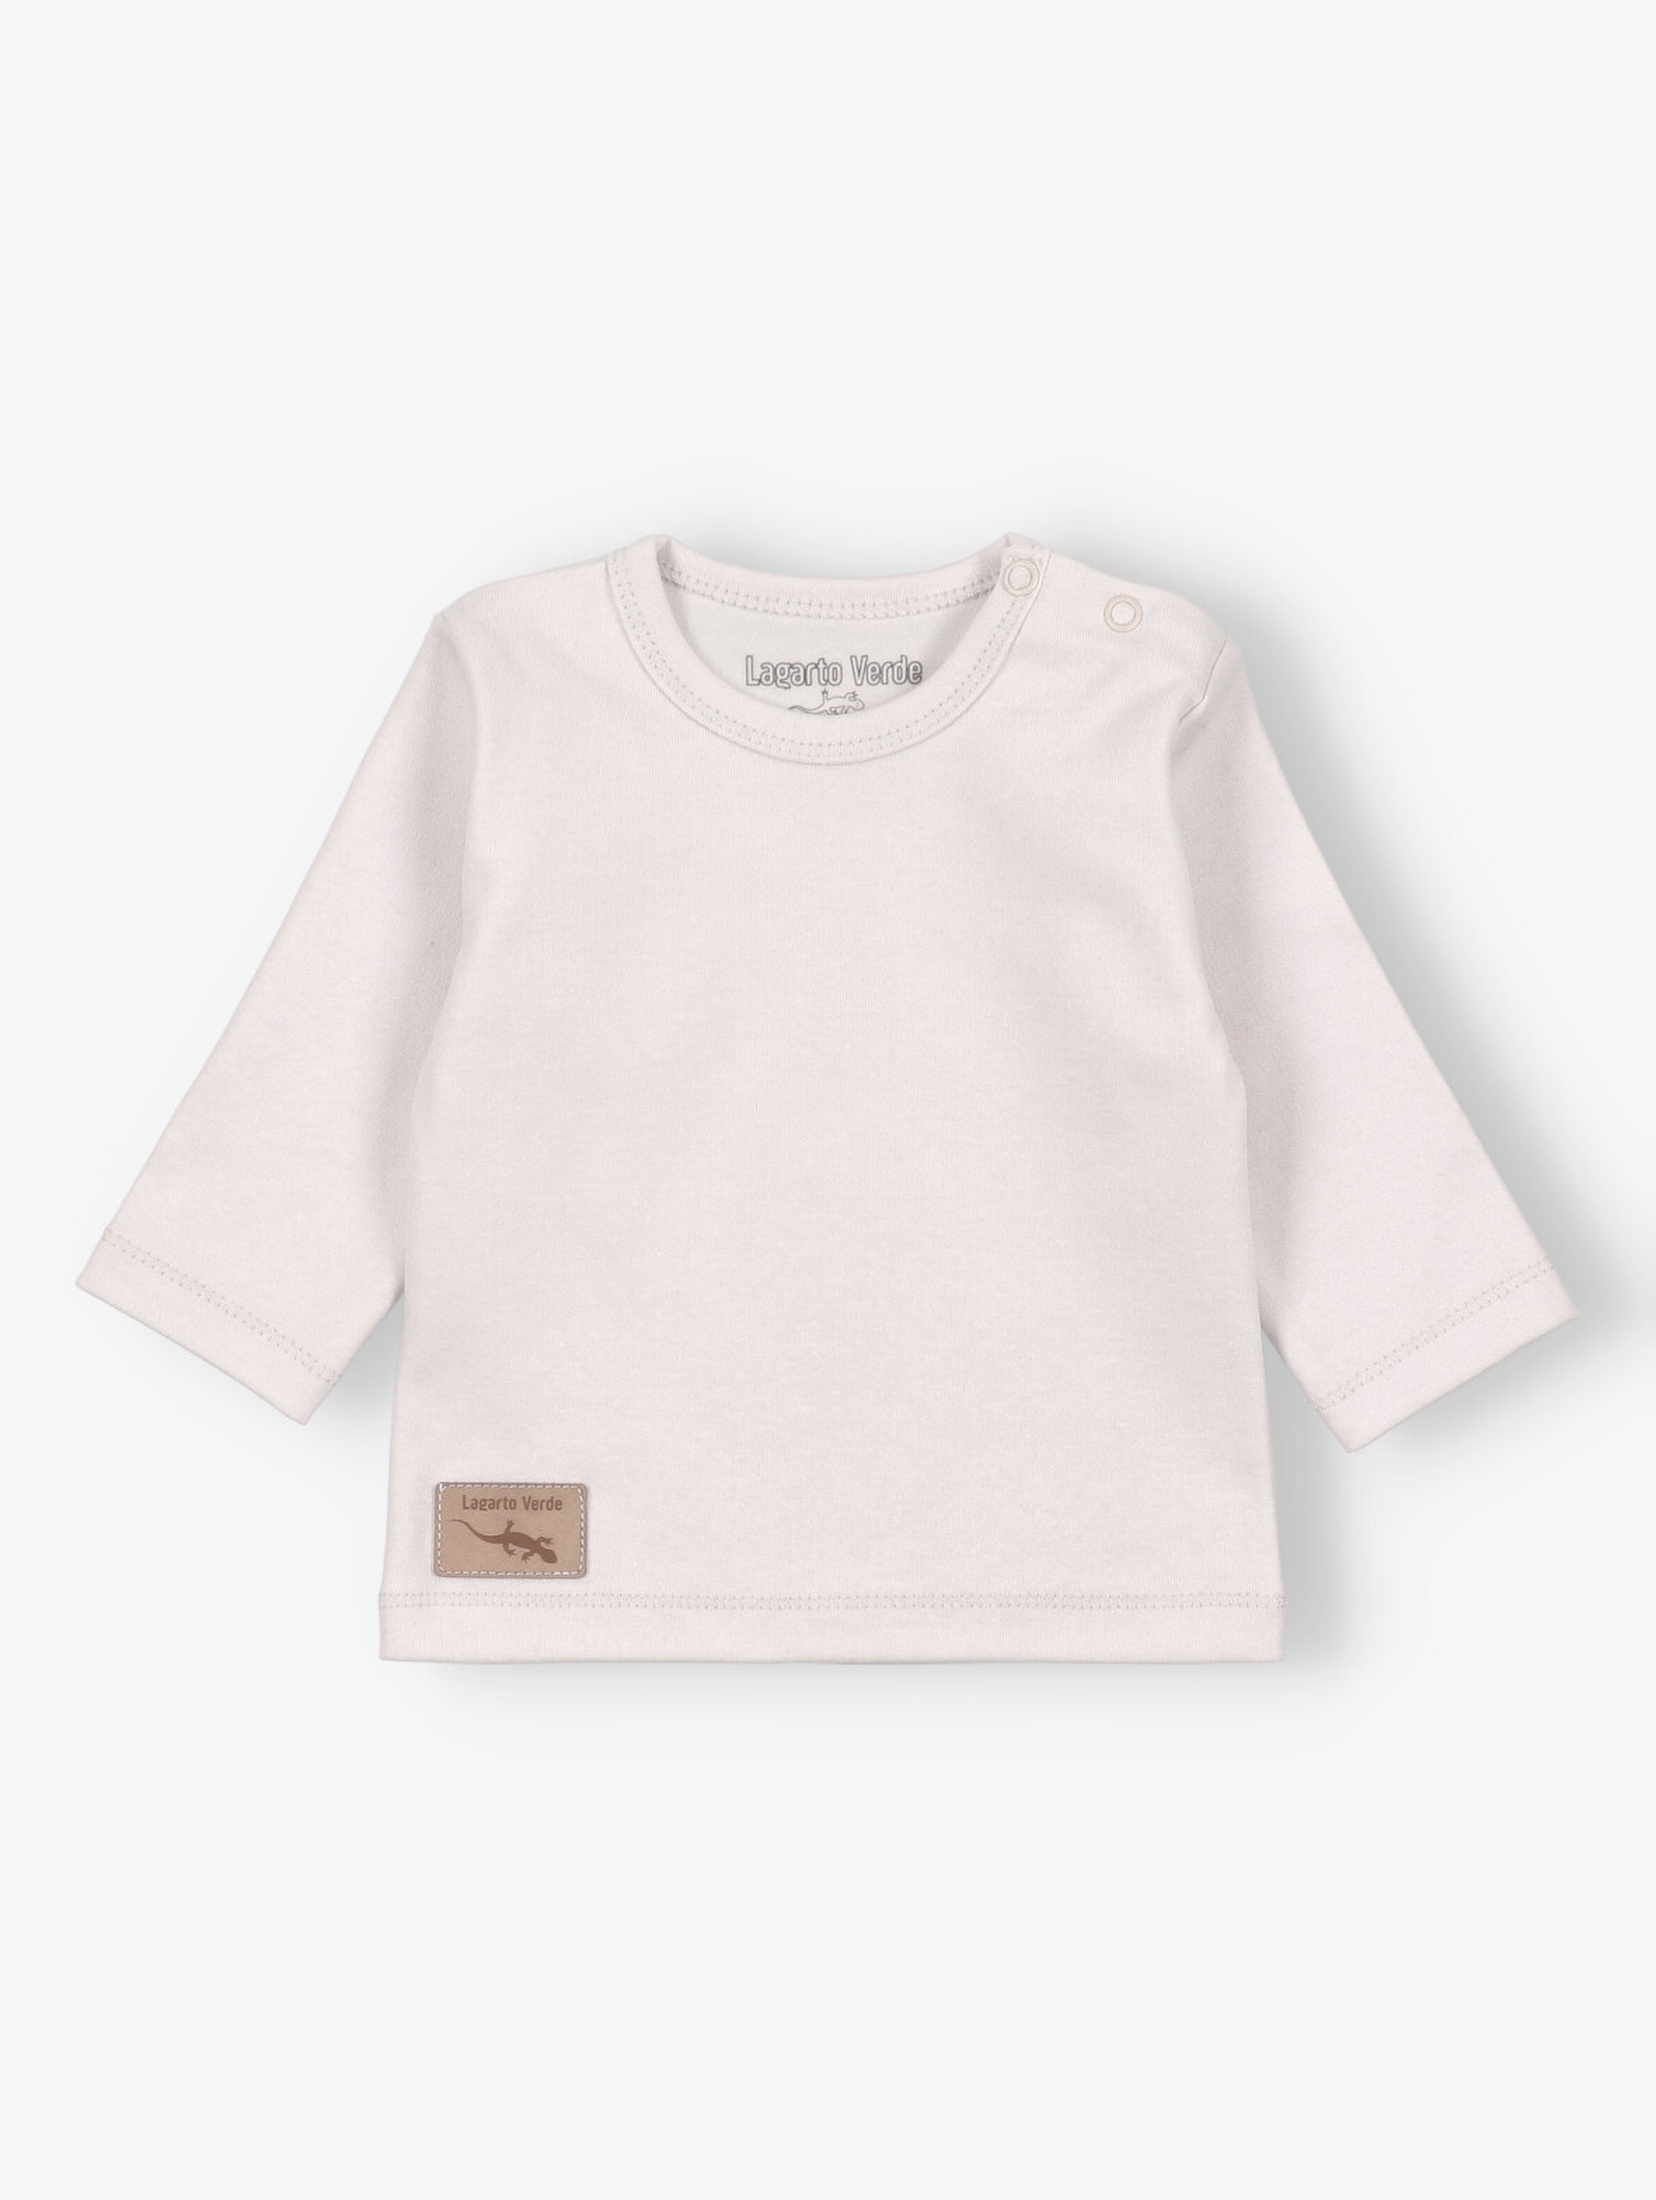 Kremowa bluzka niemowlęca bawełniana